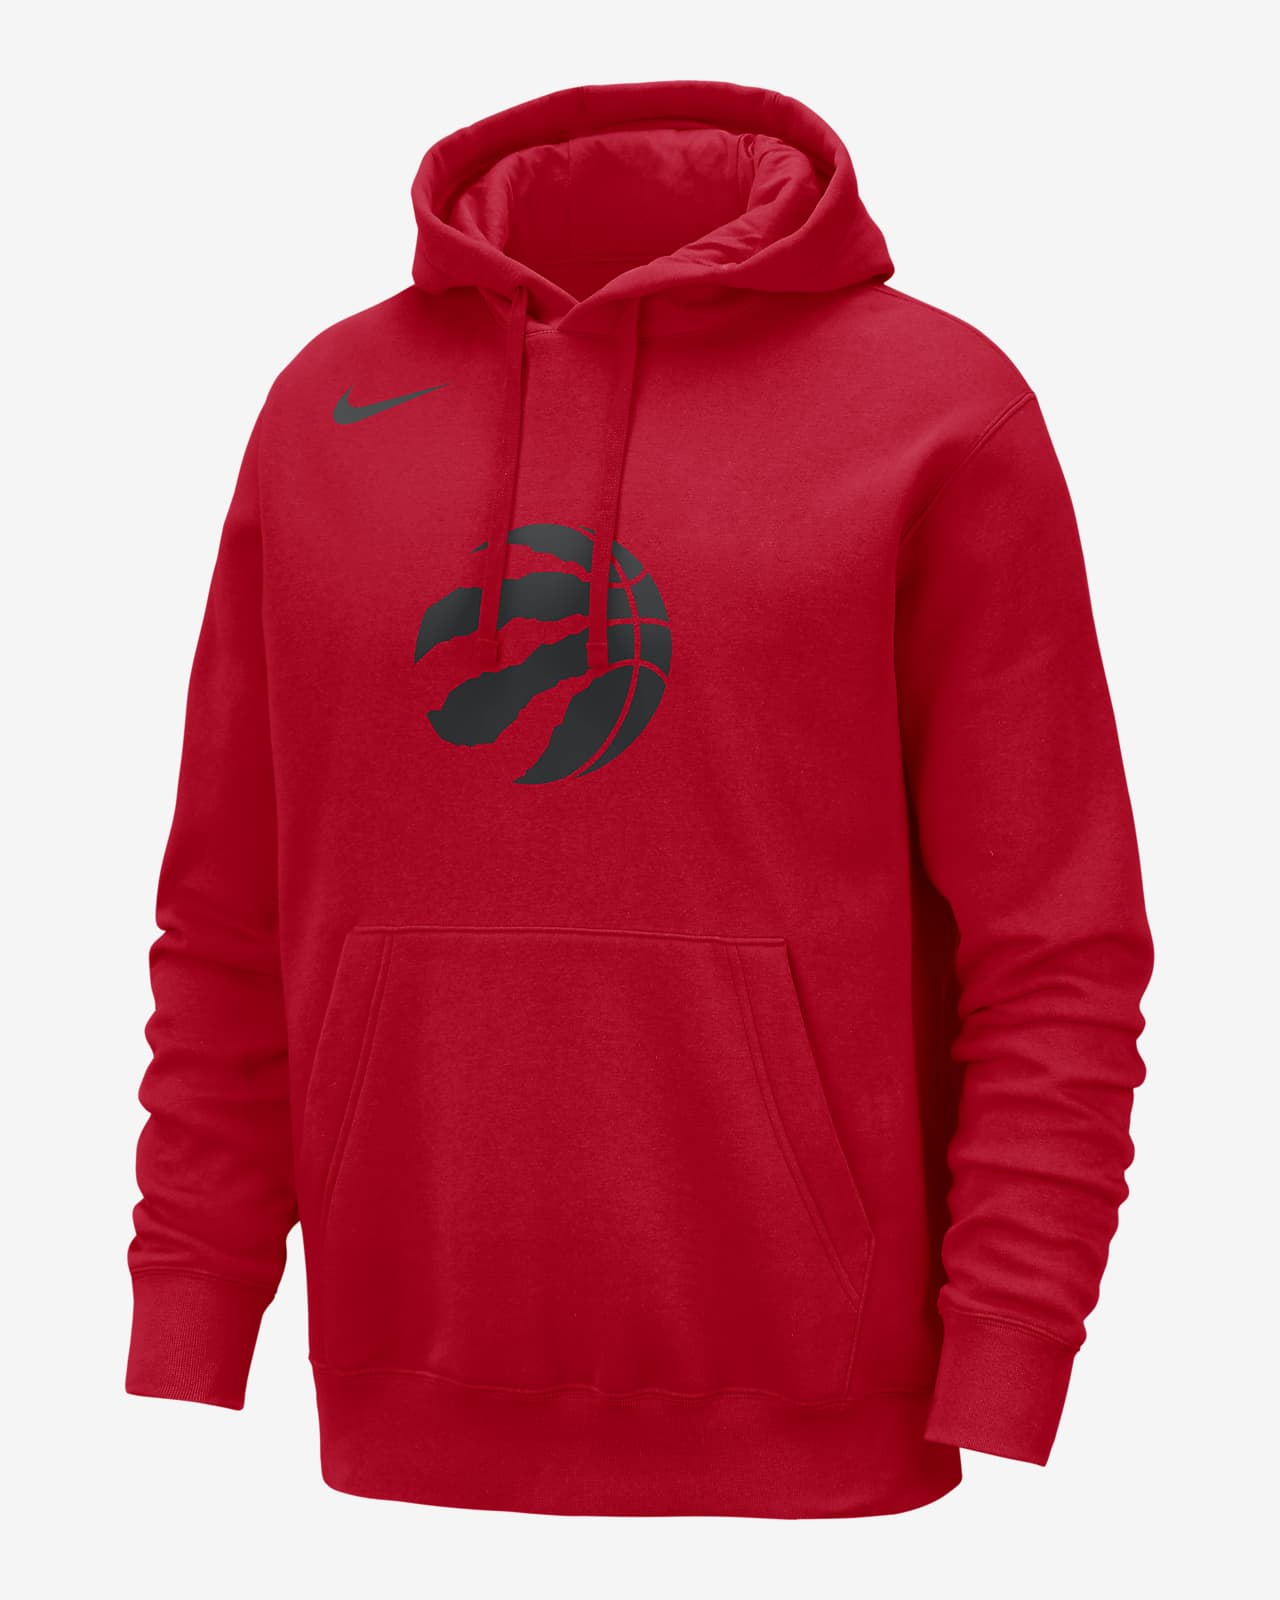 Toronto Raptors Club Sudadera con capucha Nike de la NBA - Hombre